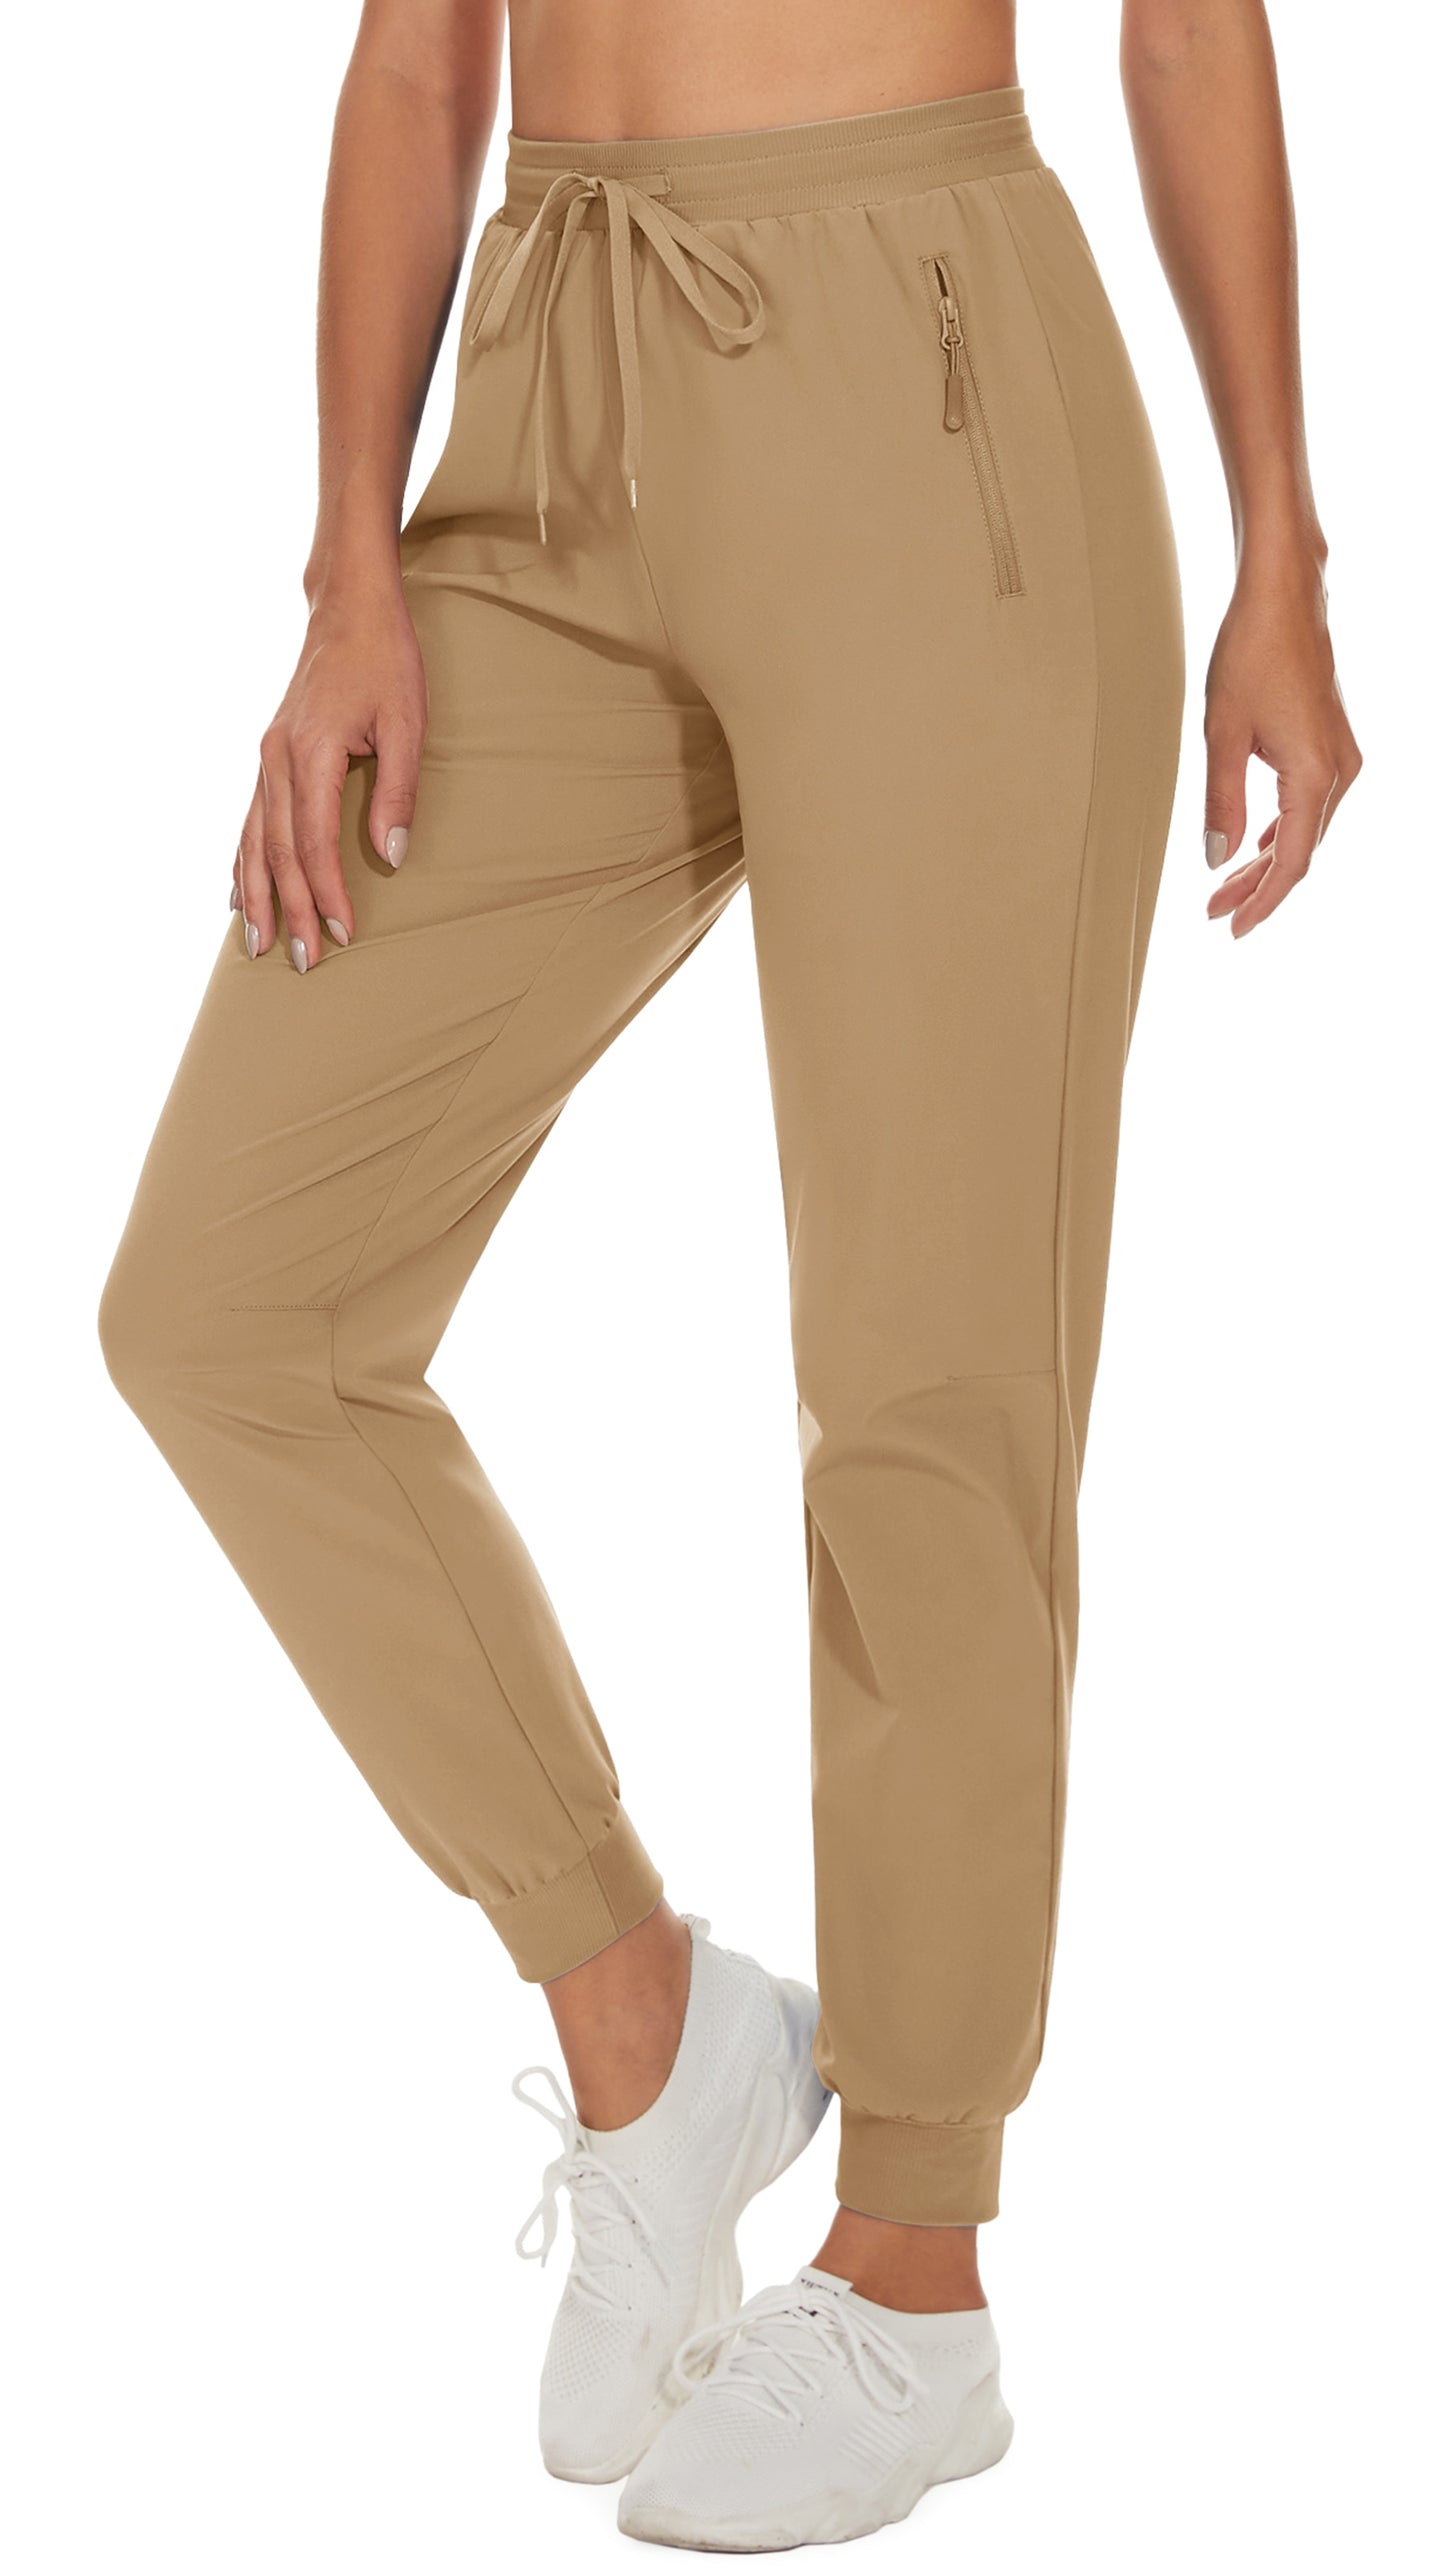 Womens Casual Cargo Pants with Zipper Pockets Regular Waist